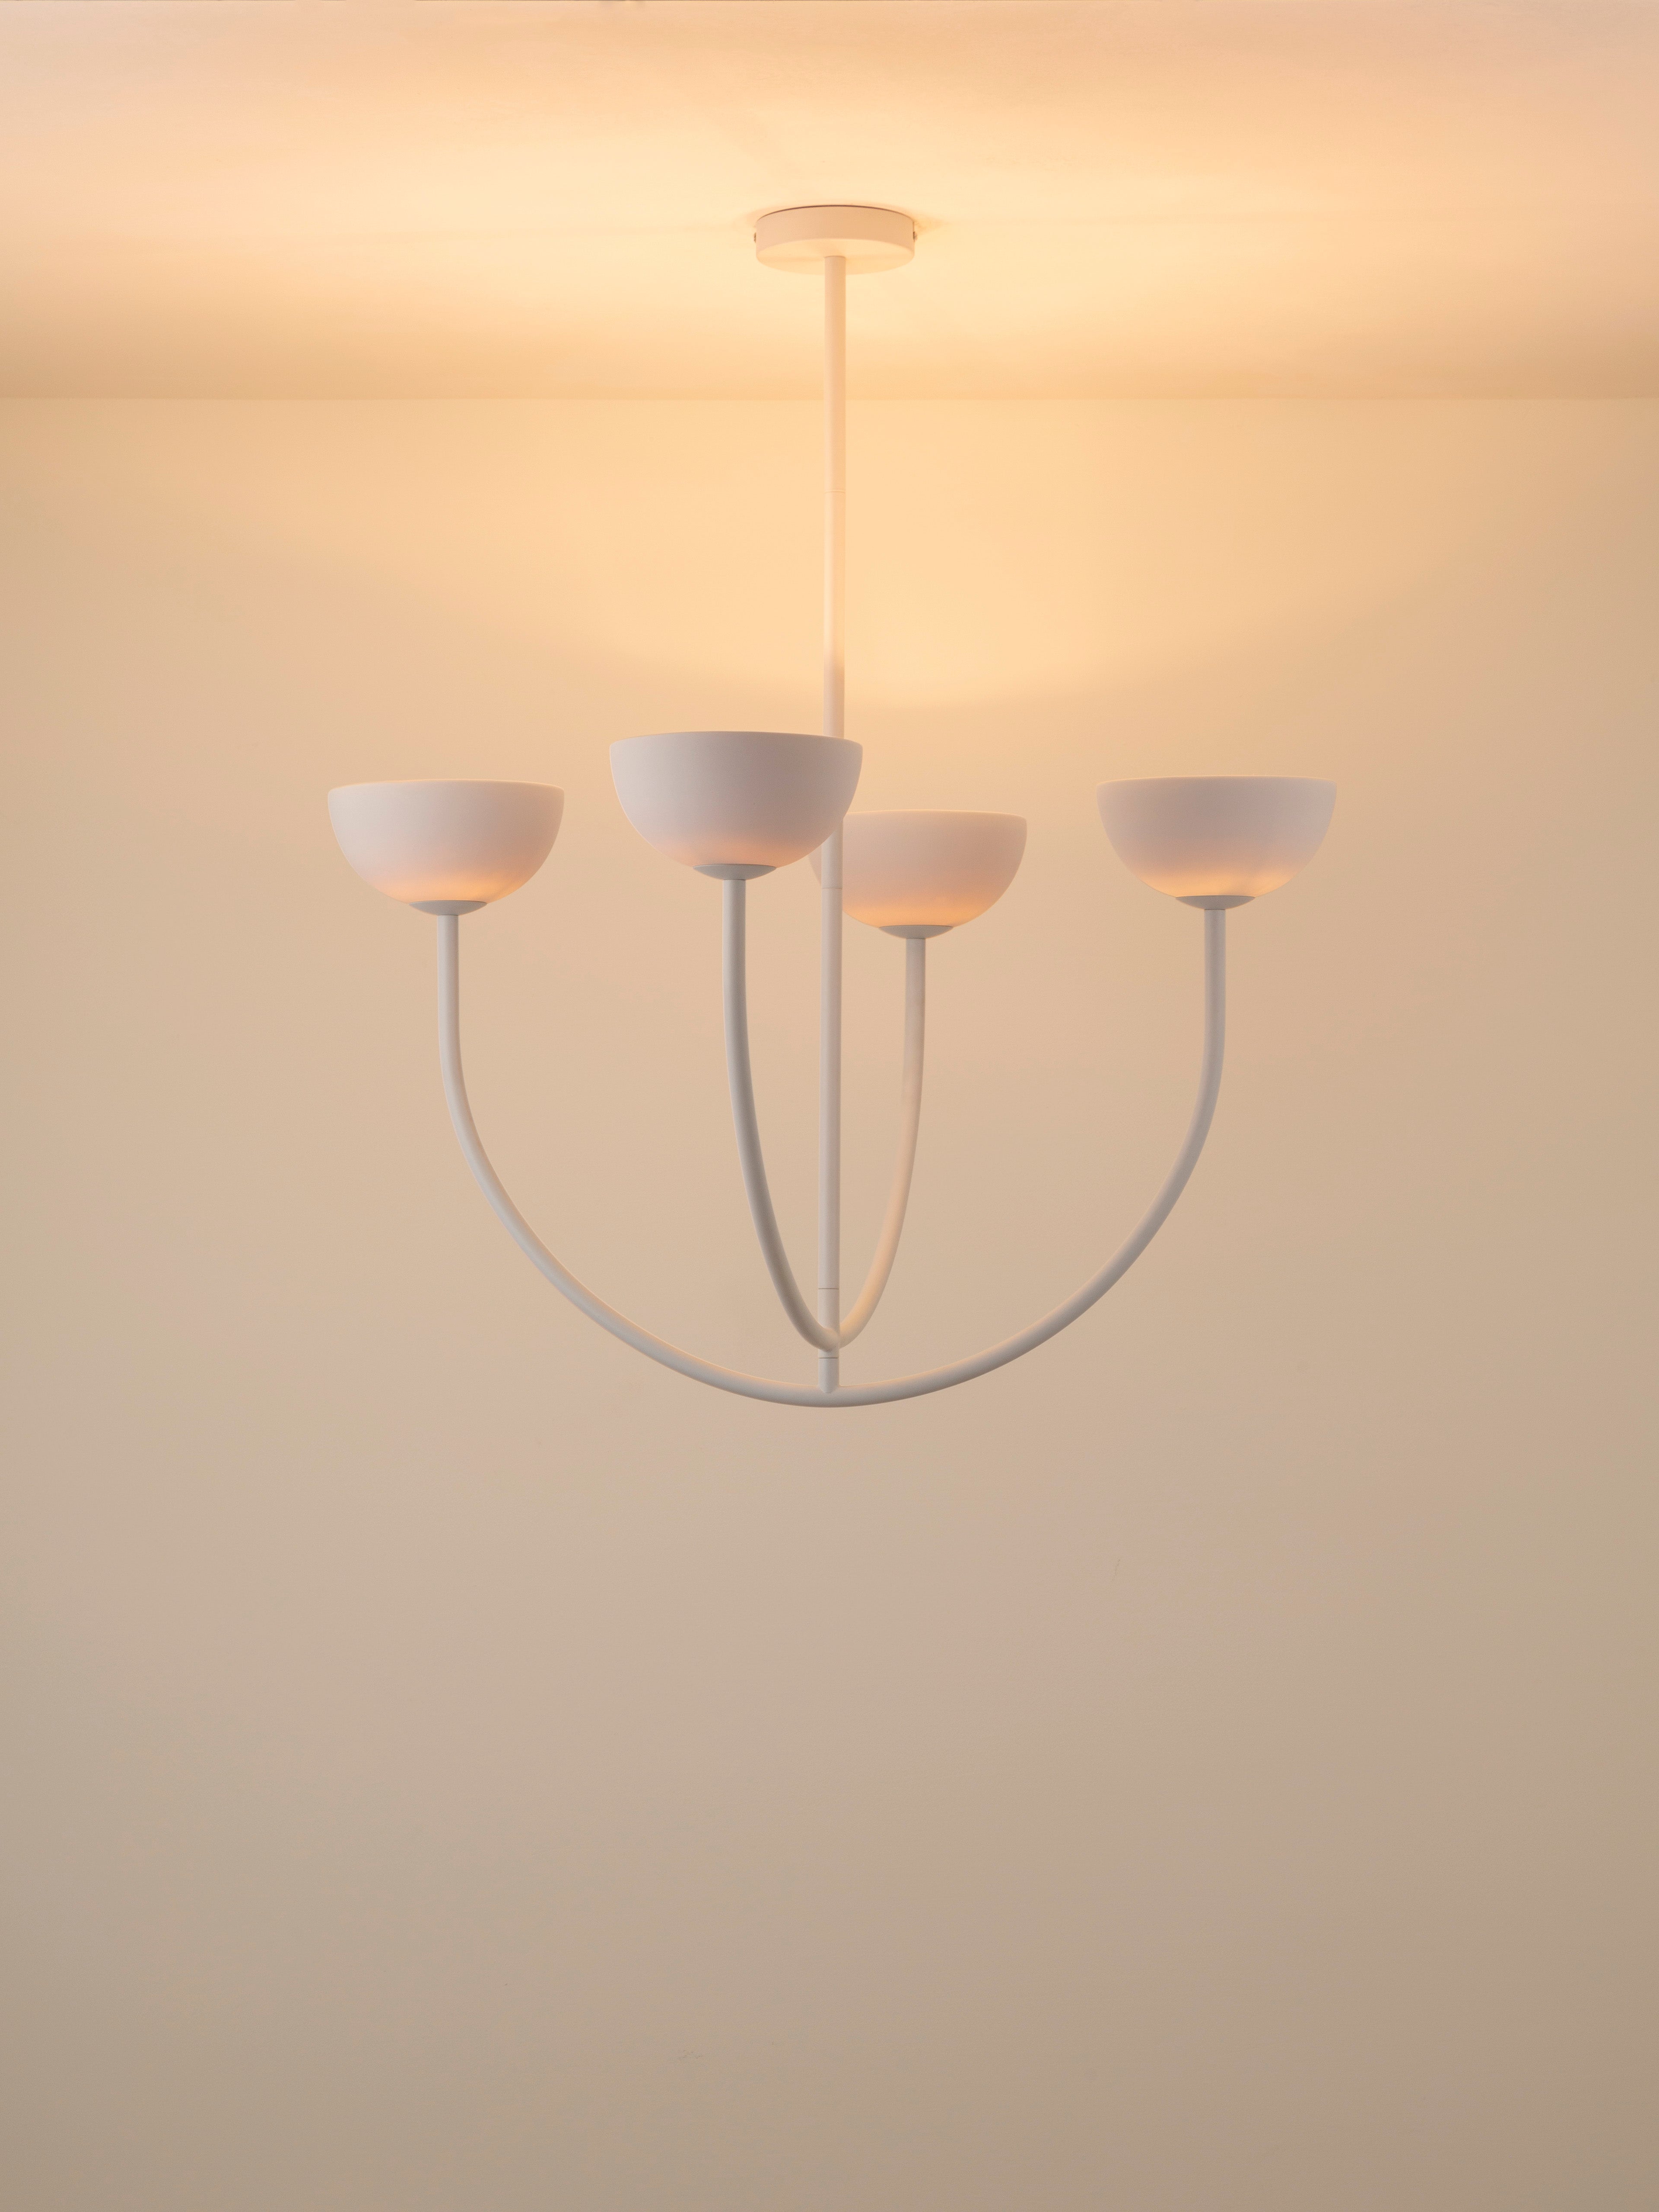 Ruzo - 4 light warm white porcelain ceiling pendant | Chandelier | Lights & Lamps Inc | Modern Affordable Designer Lighting | USA